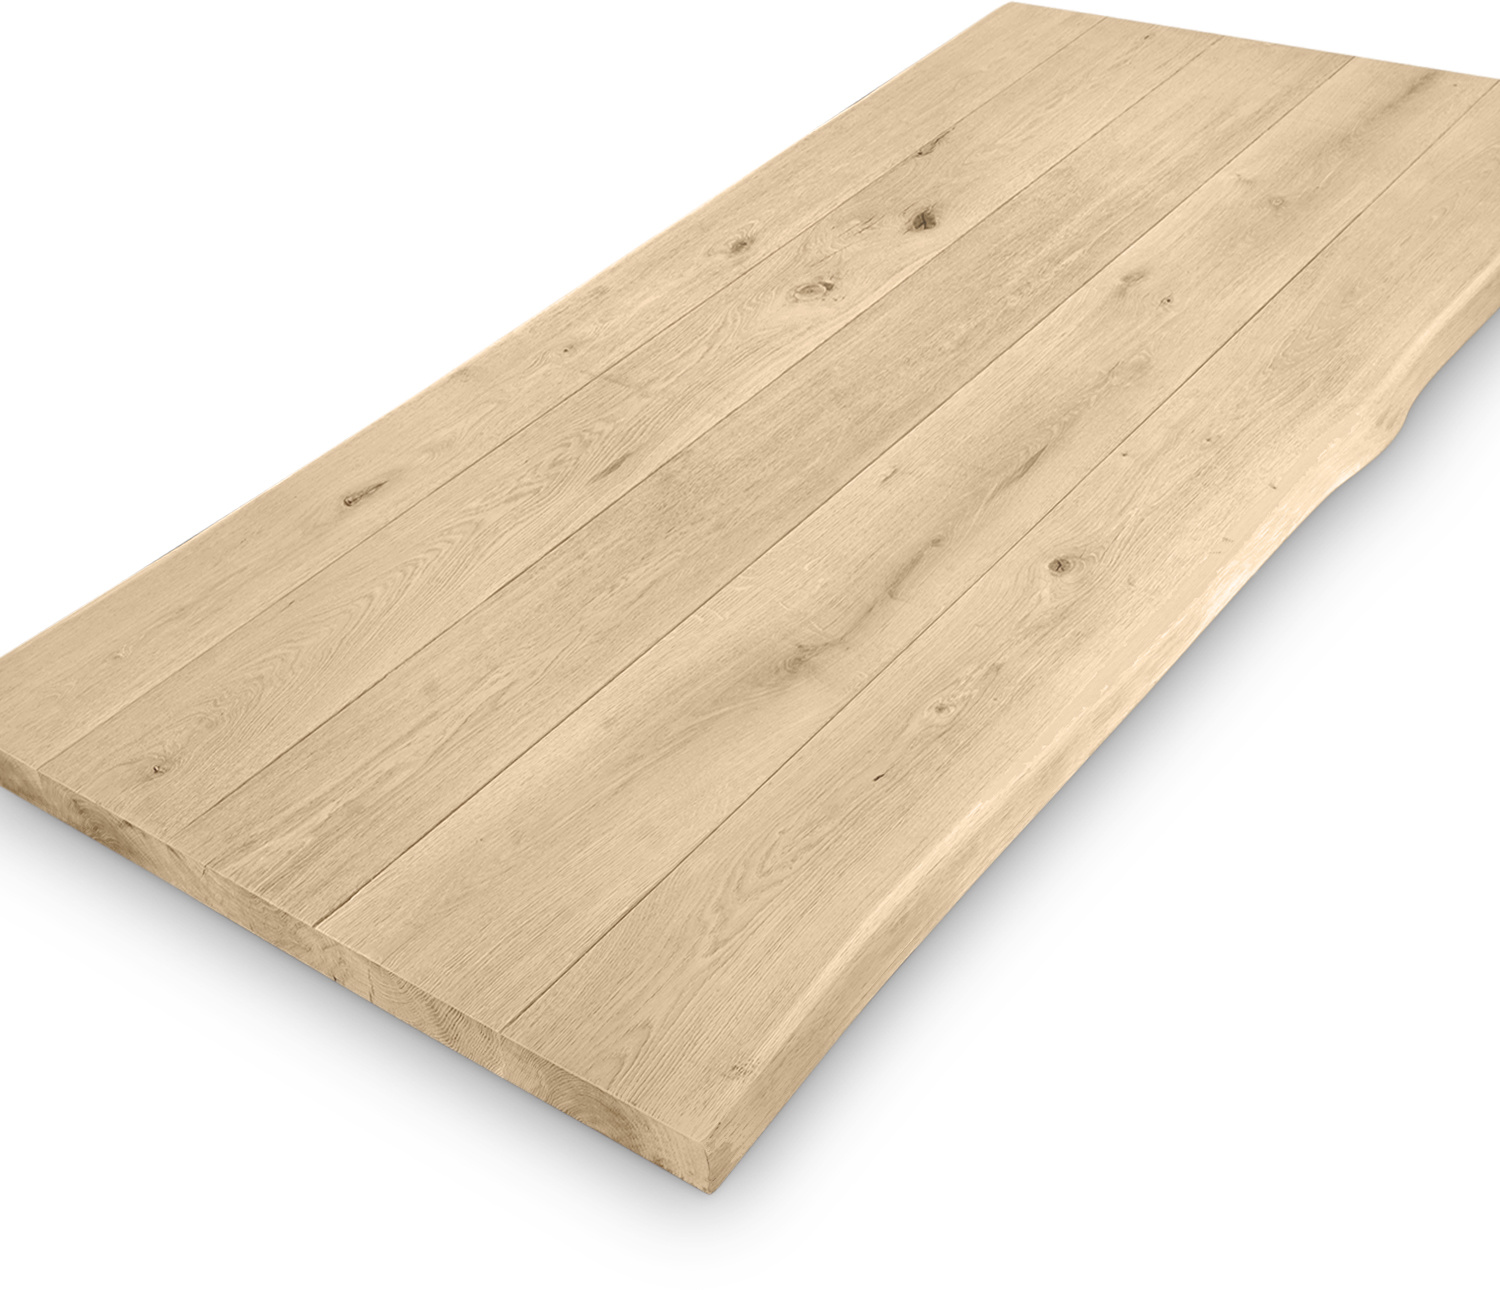  Eiken boomstam(rand) tafelblad - 4,5 cm dik (1-laag) - Diverse afmetingen - extra rustiek Europees eikenhout - GEBORSTELD +  V-GROEVEN met schorsrand / waankant - verlijmd kd 10-12%